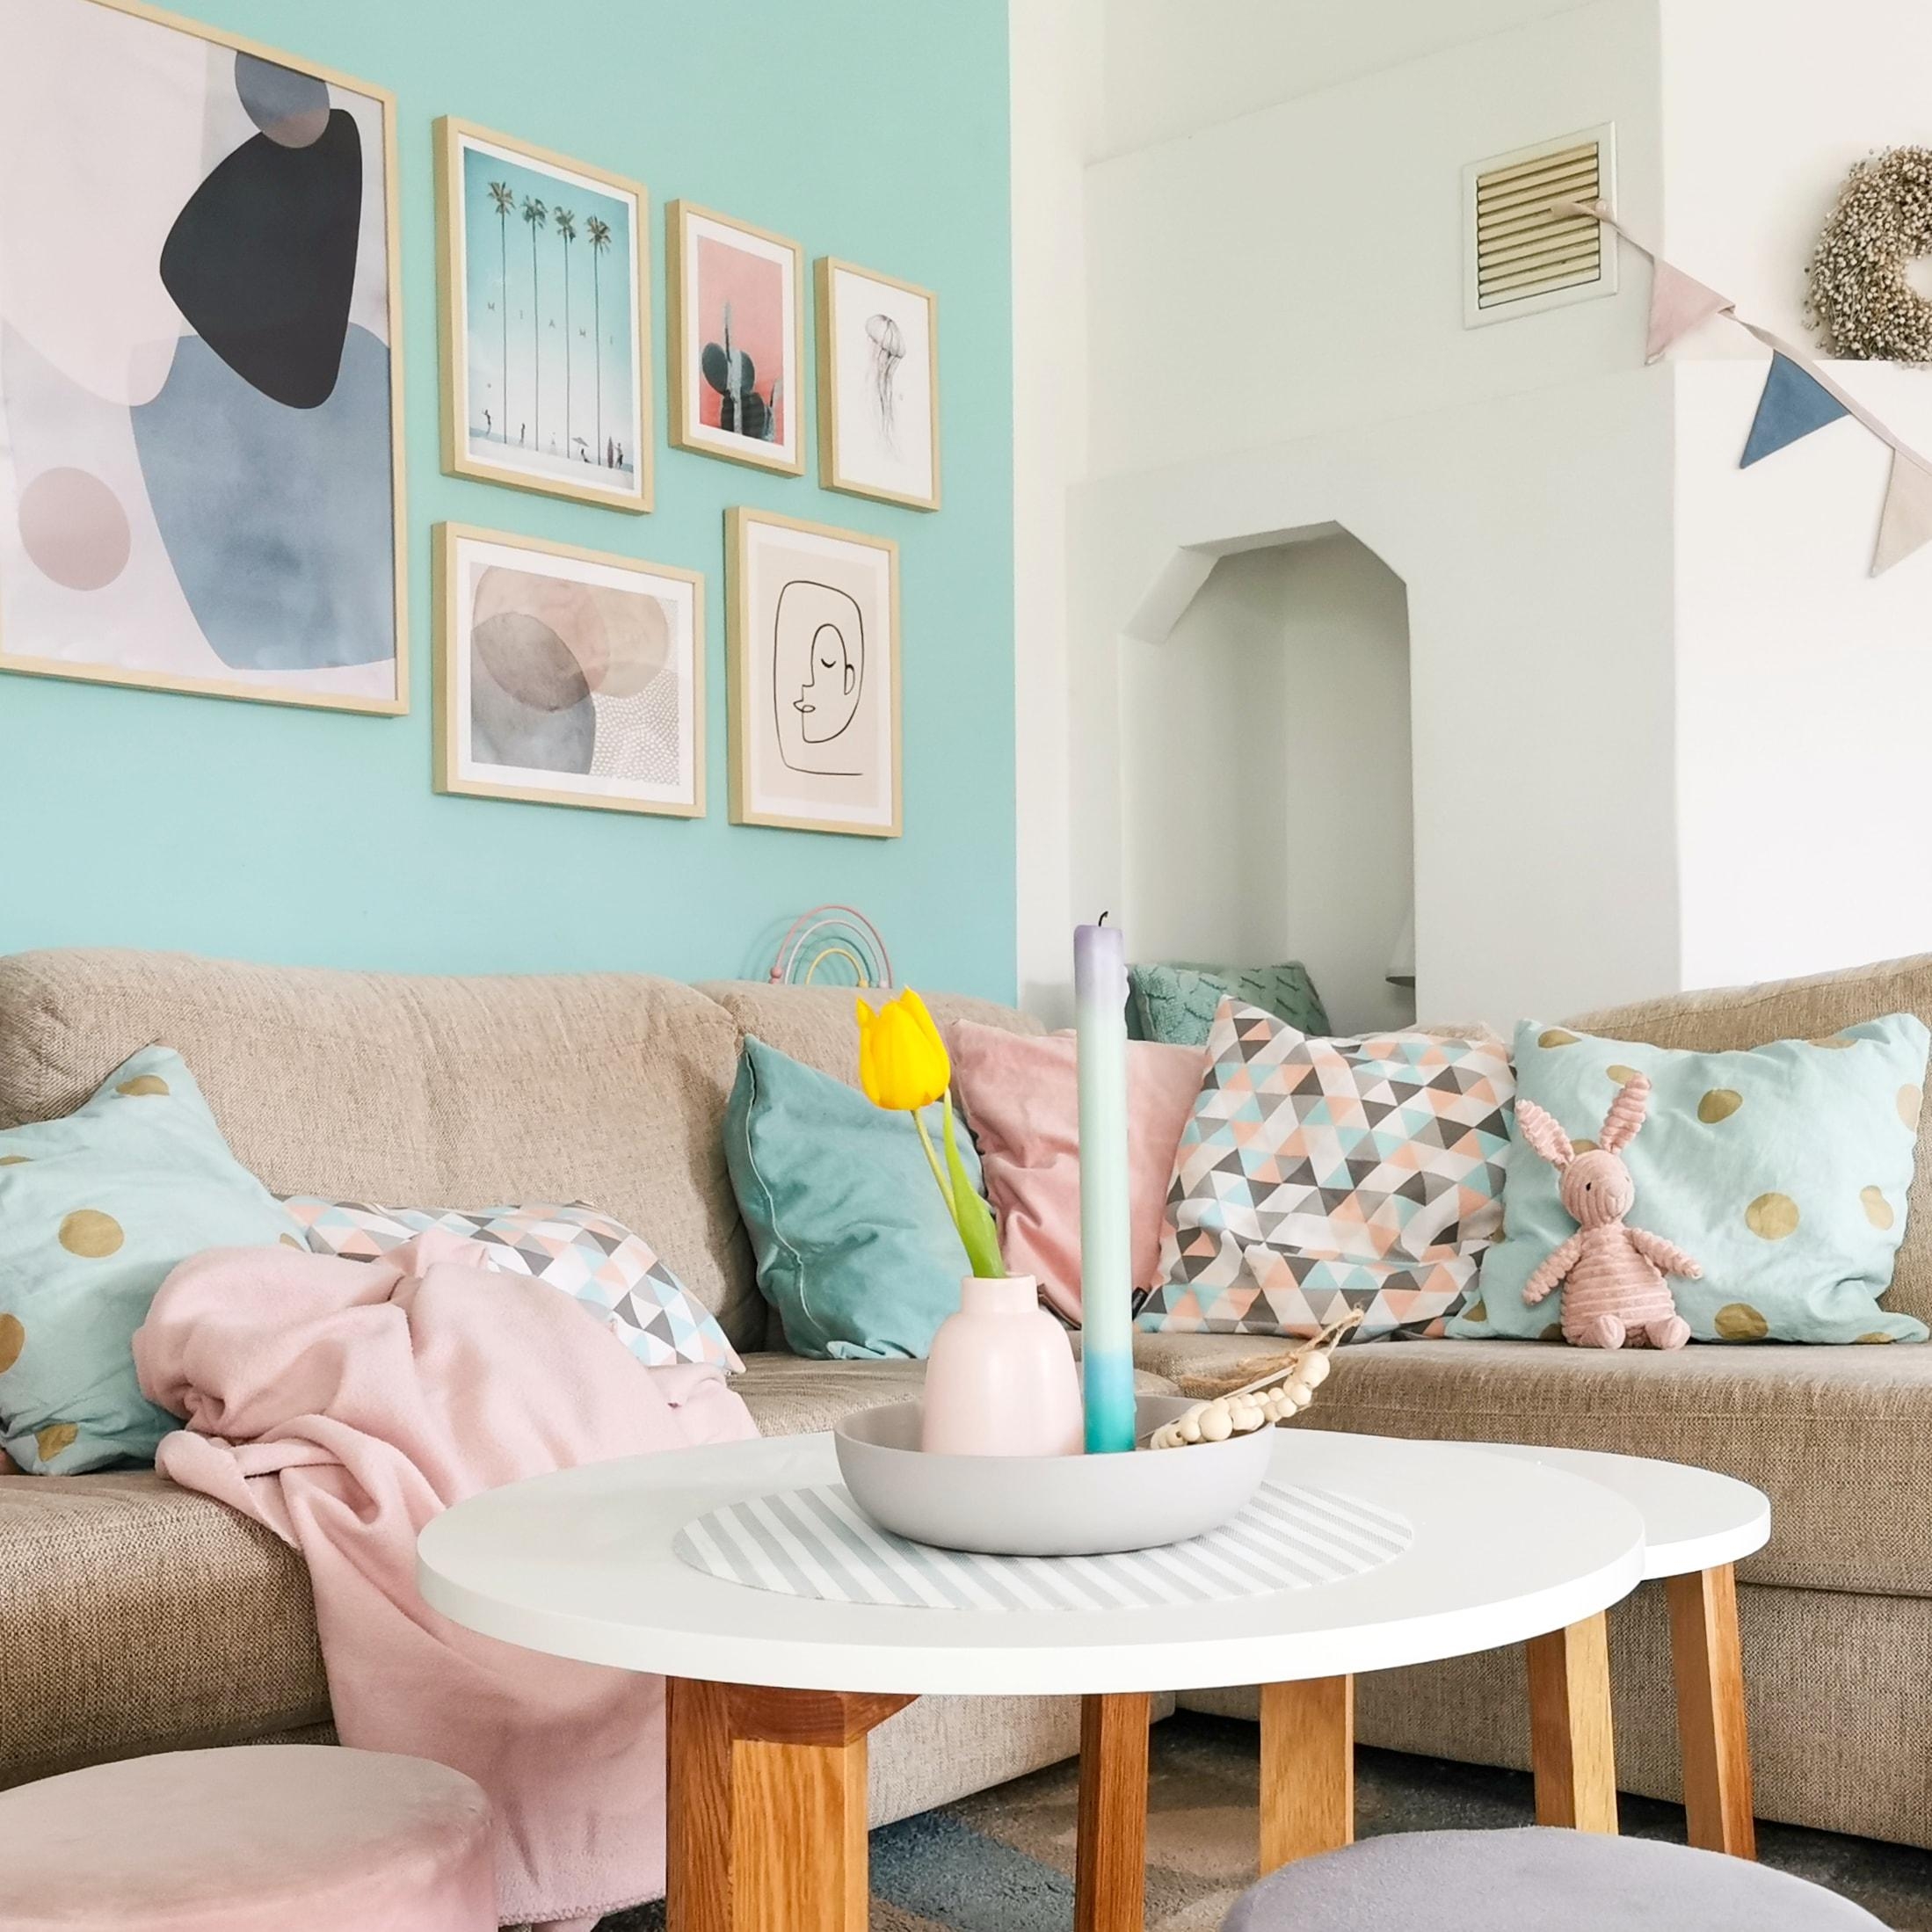 Bei uns herrscht immer pastelliger Frühling. #pastell #pastellliebe #wohnzimmer #bilderwand #livingroom